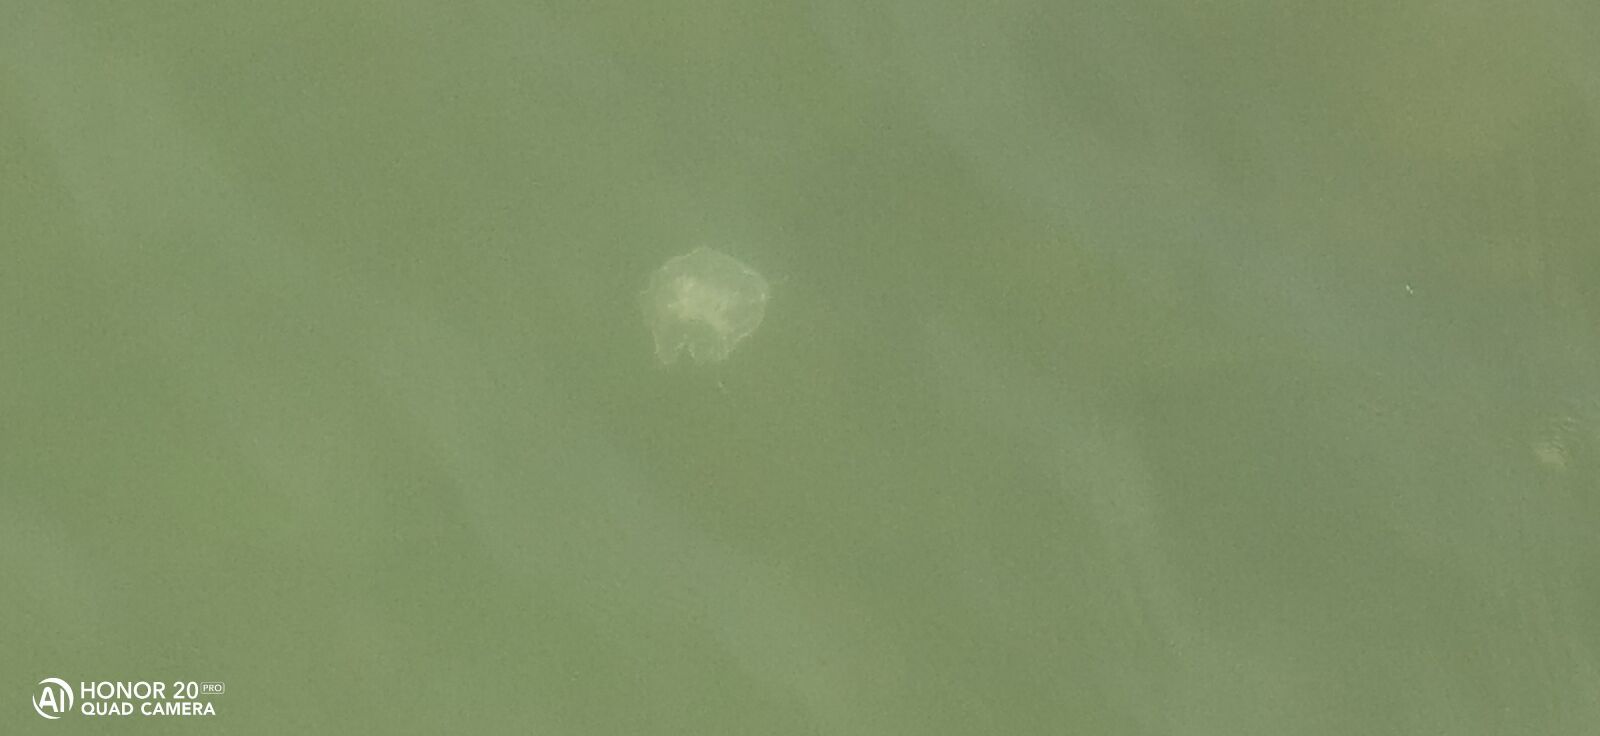 HUAWEI YAL-L41 sample photo. медуза, море, фото photography